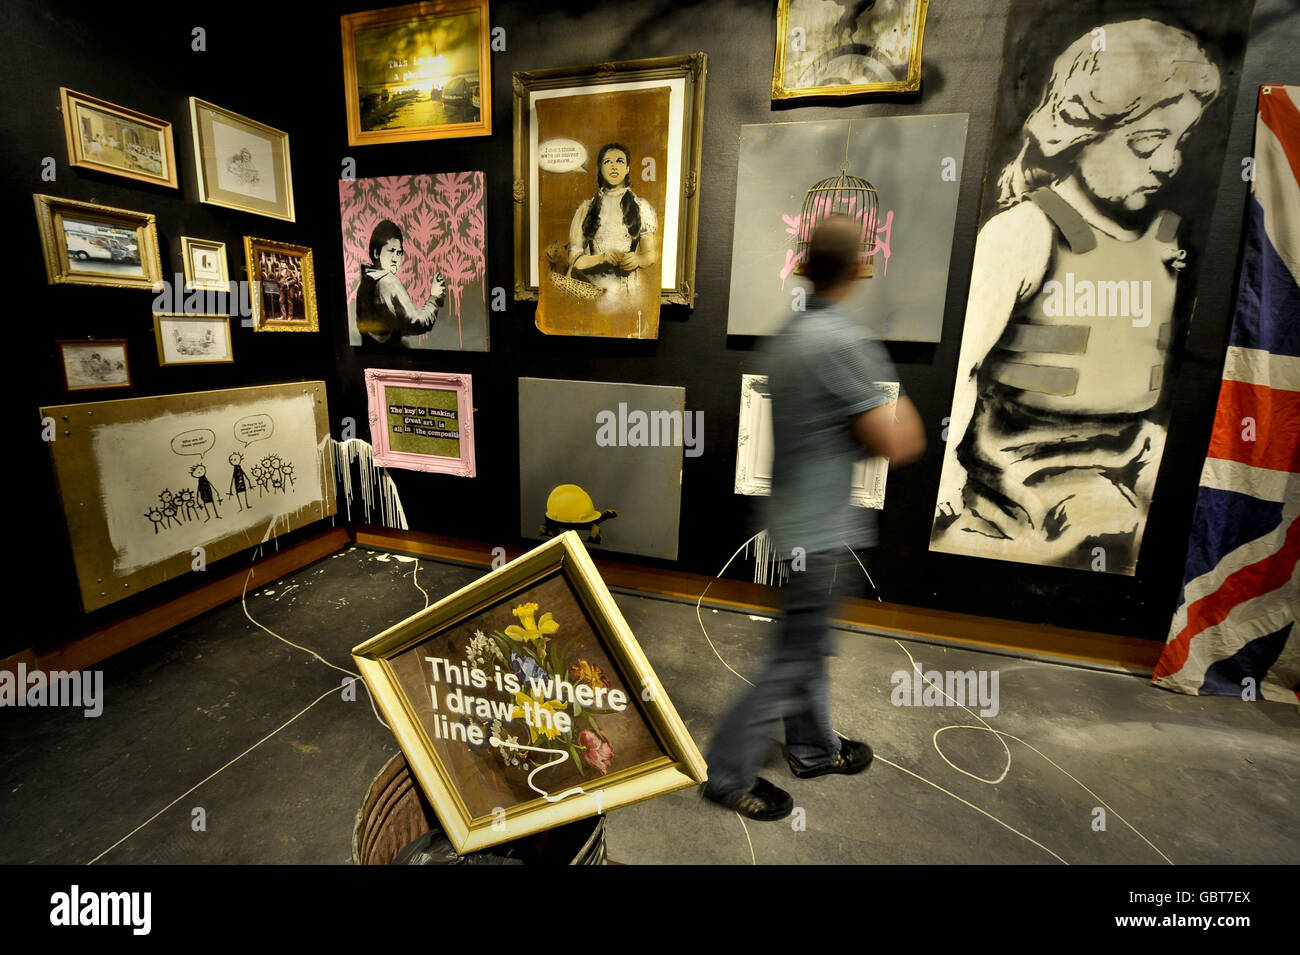 Un hombre admira obras de arte en una exposición del artista Banksy en el Museo de Bristol. Foto de stock